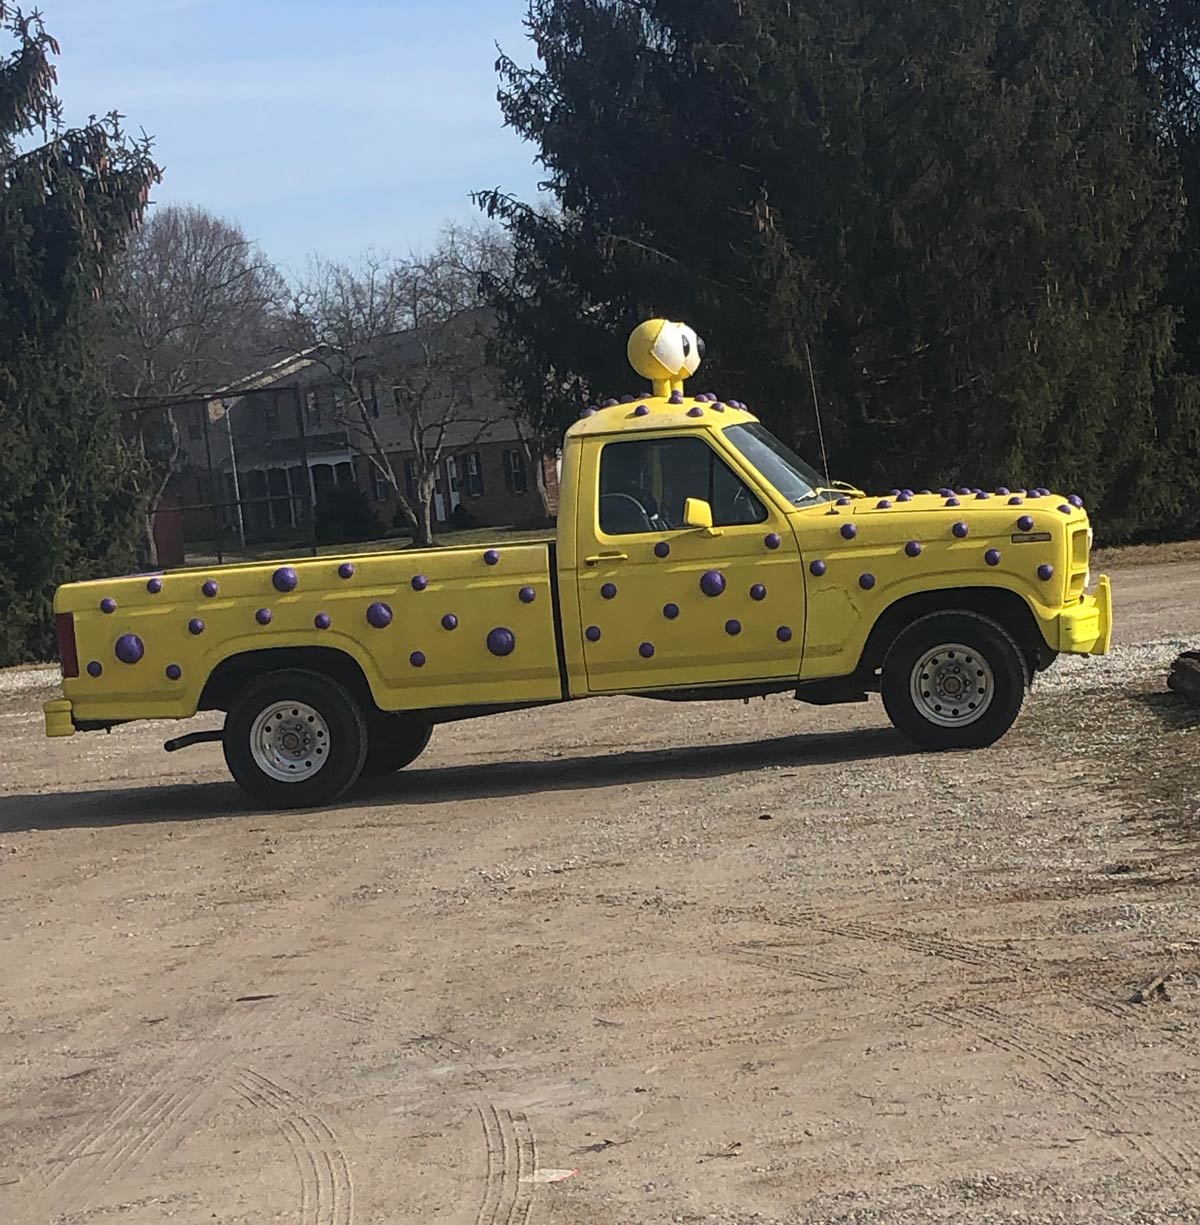 SpongeBob truck in the wild